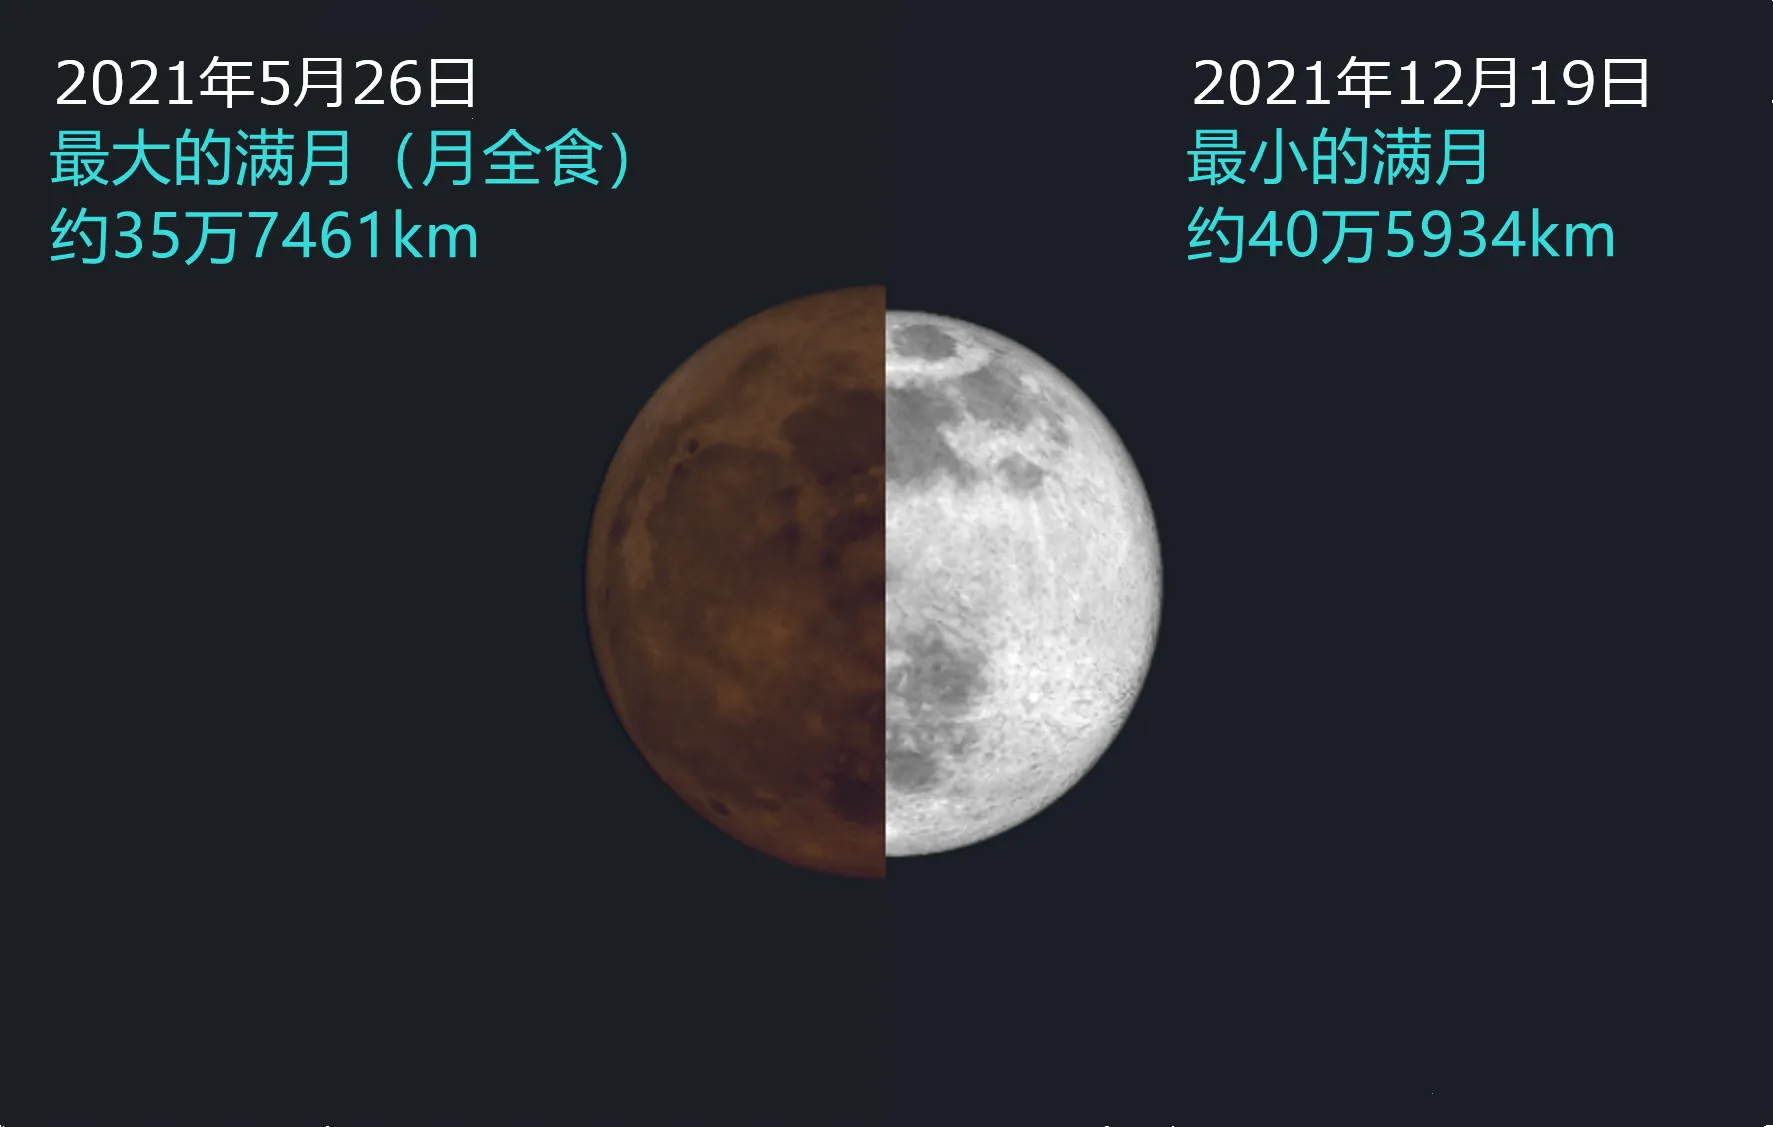 2021/12/19 年度最小满月